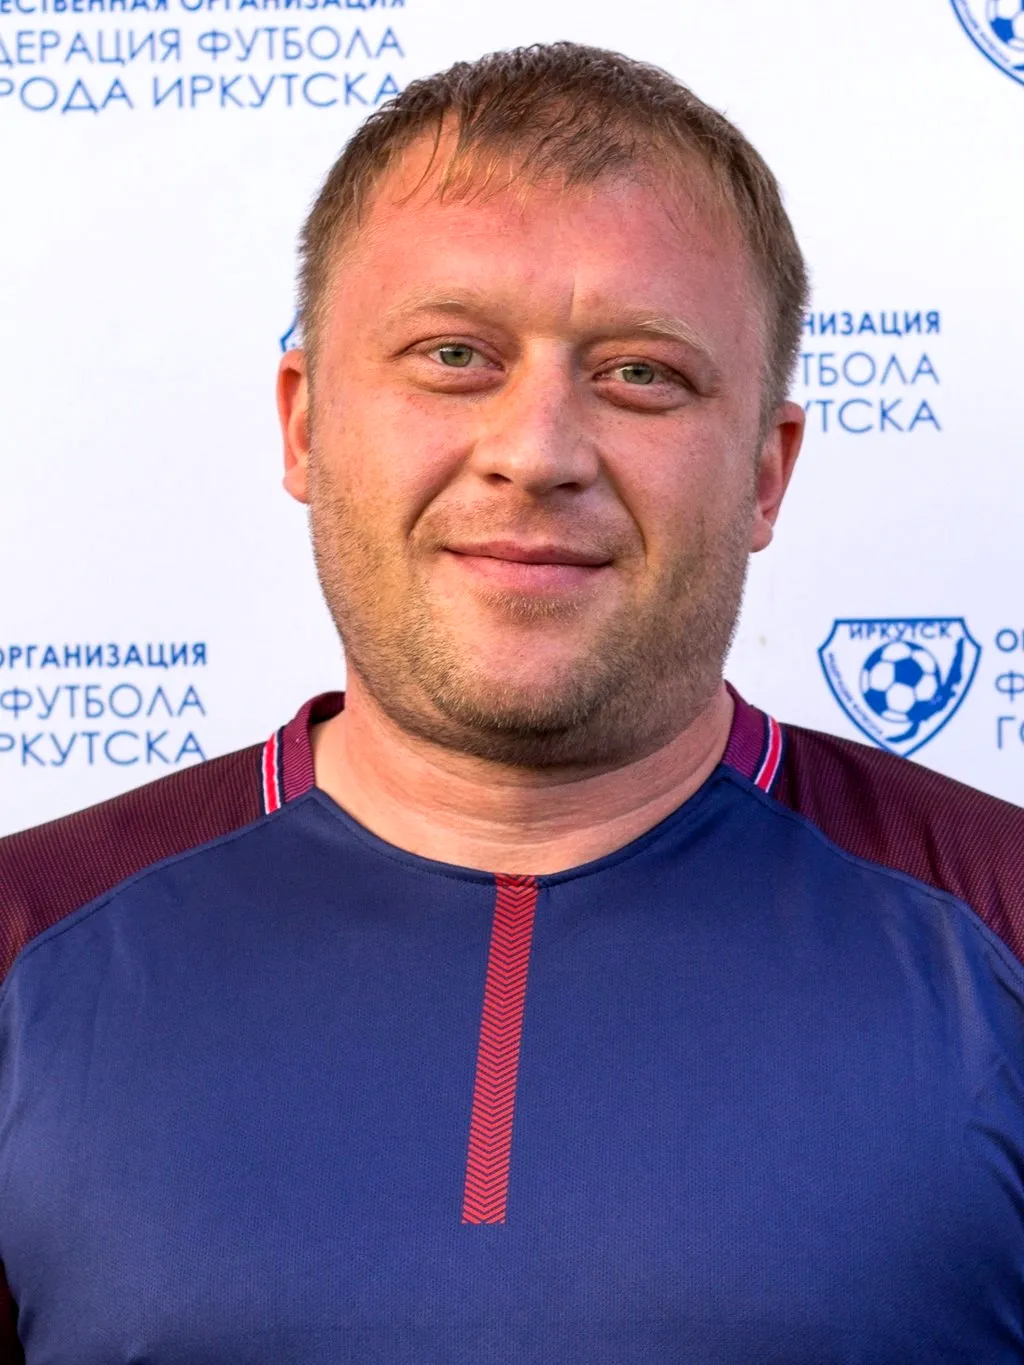 Пономарев Александр Александрович